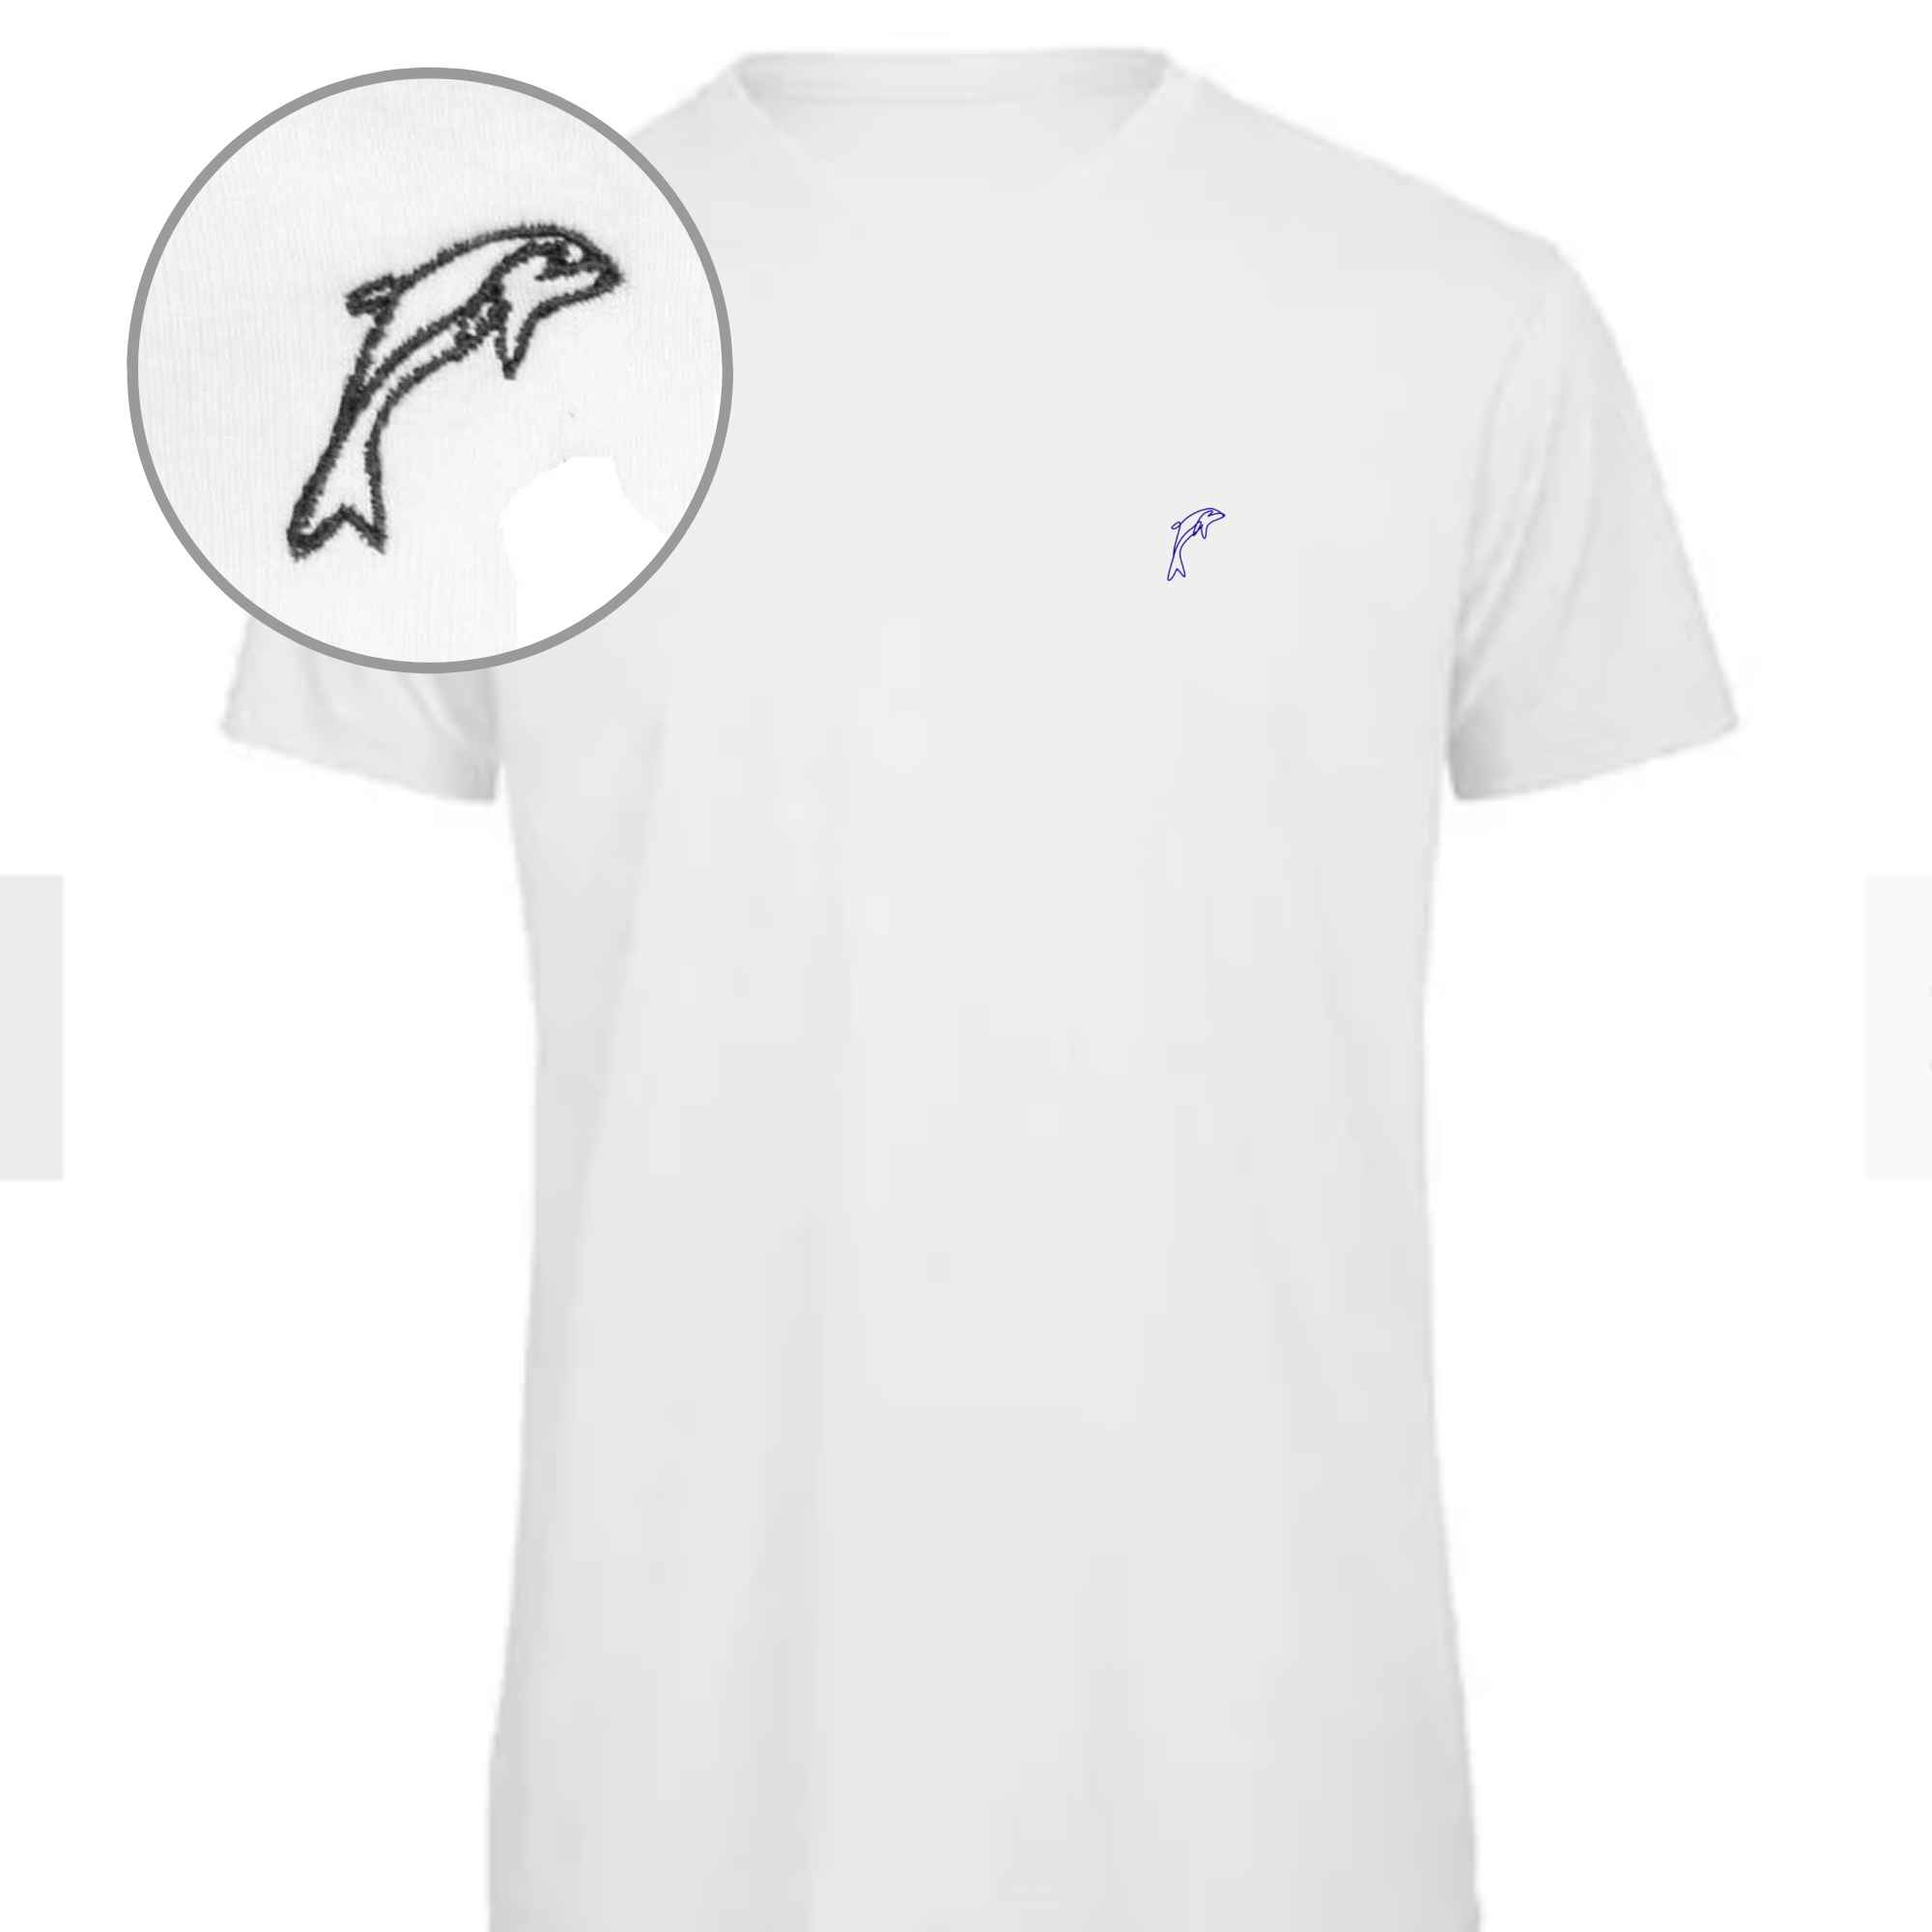 T-shirt in edlem Weiß mit Delphin bestickt auf der Brust für den Urlaub